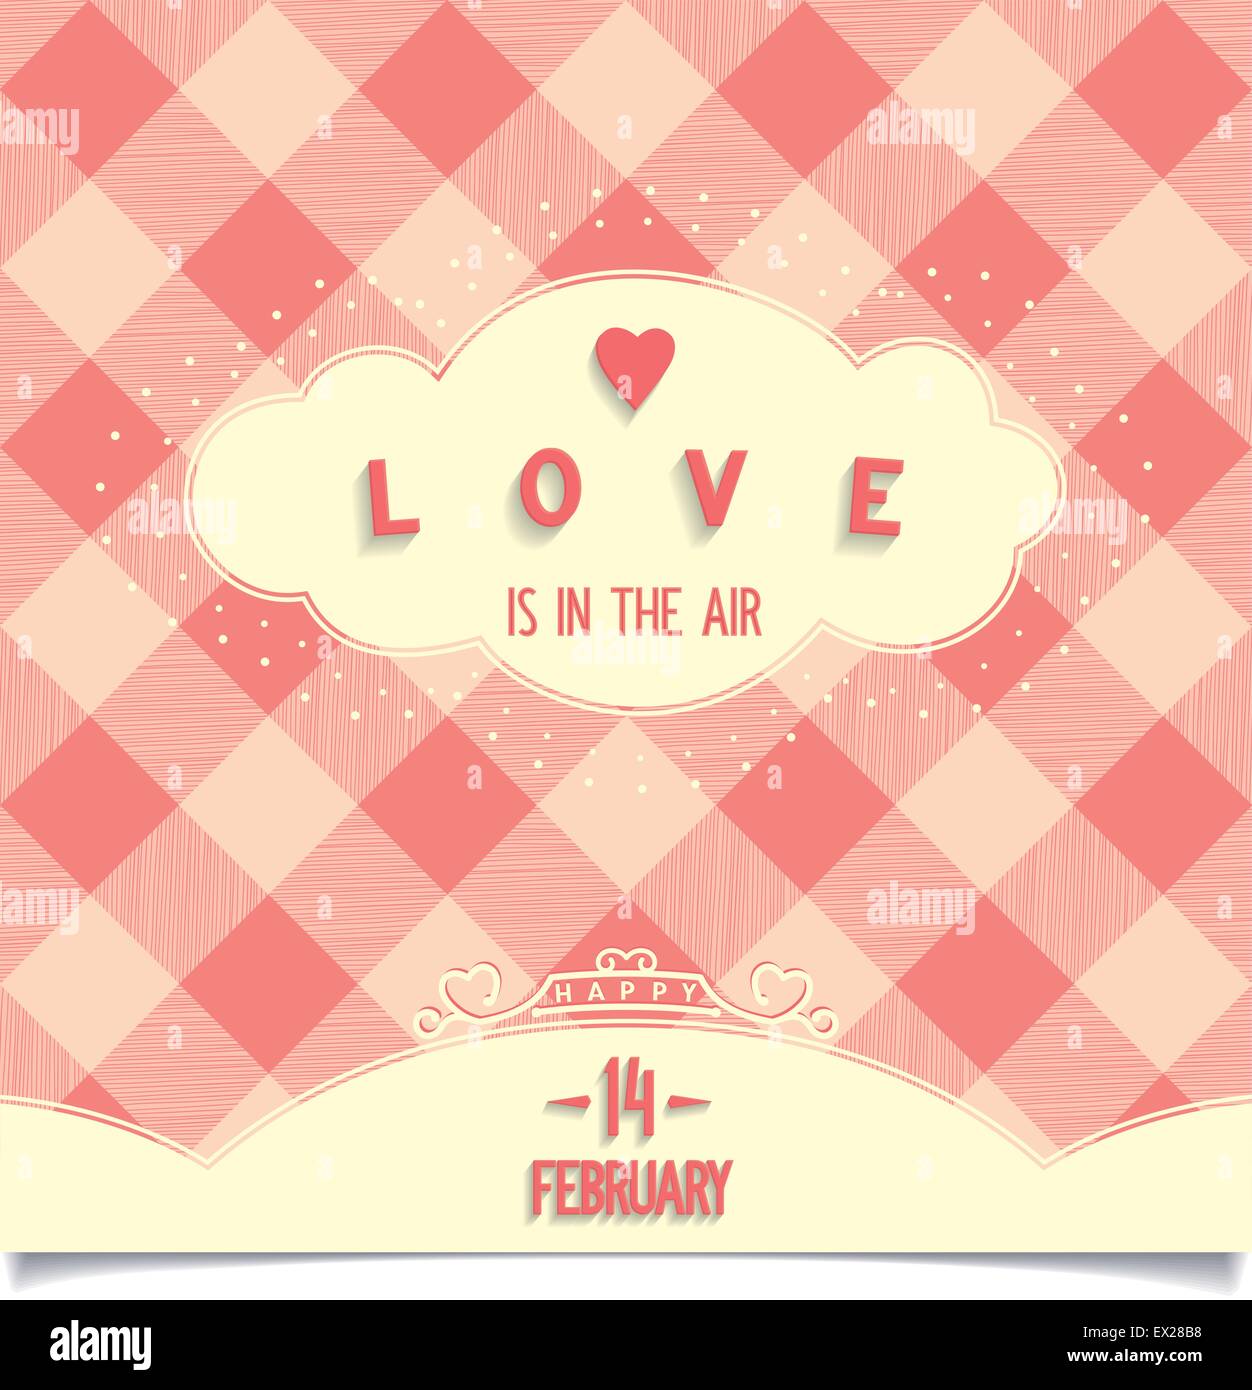 L'amour est partout autour de nous est dans l'air, une carte Happy Valentine's Day. Illustration vecteur eps8 Illustration de Vecteur